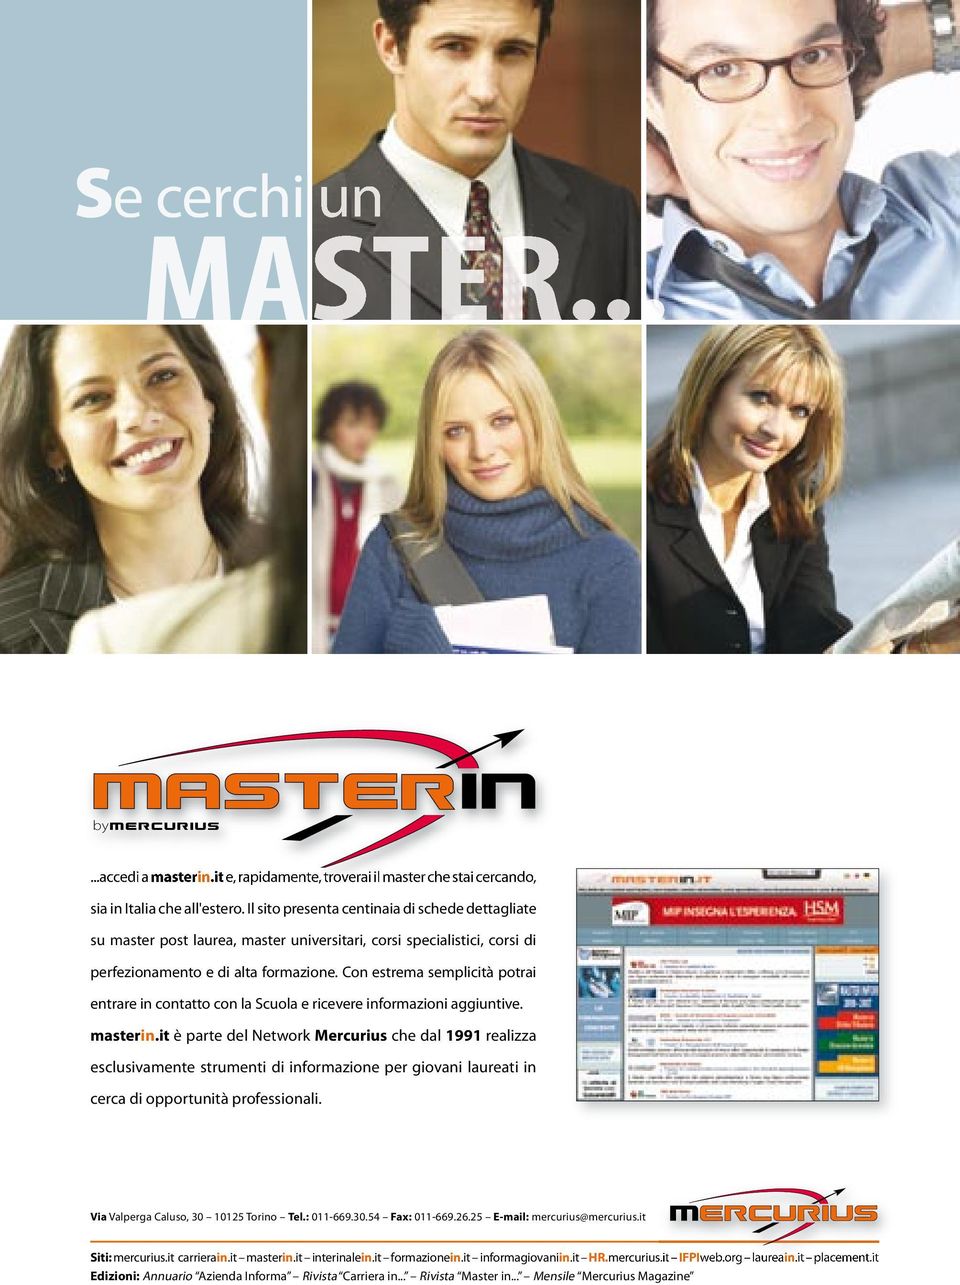 Con estrema semplicità potrai entrare in contatto con la Scuola e ricevere informazioni aggiuntive. masterin.